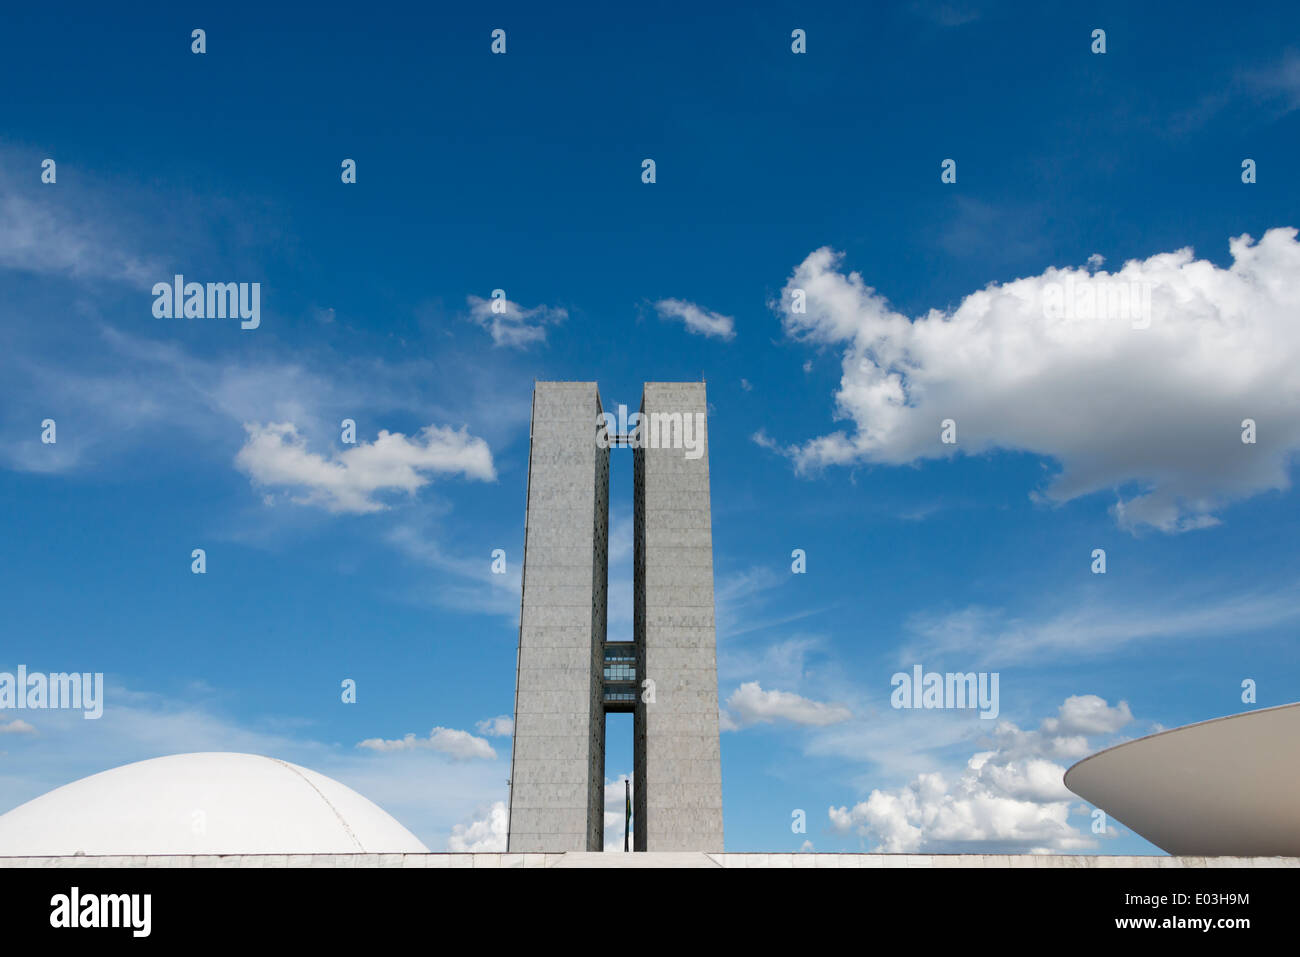 Congrès national complexe conçu par l'architecte Oscar Niemeyer, Brasilia, Brésil Banque D'Images